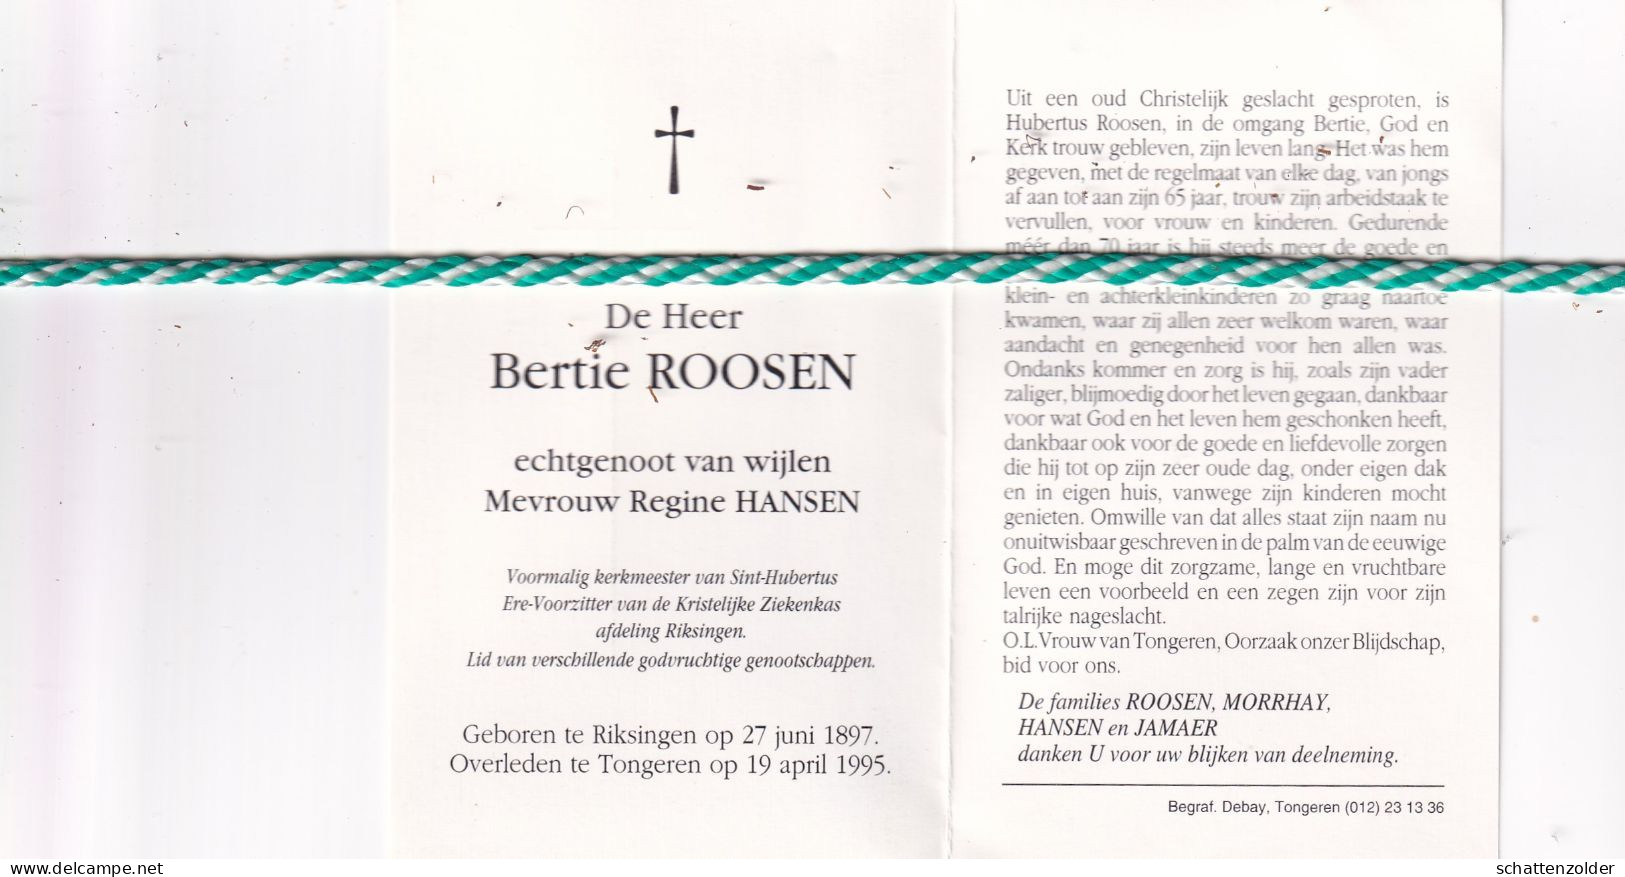 Bertie Roosen-Hansen, Riksingen 1897, Tongeren 1995 - Obituary Notices